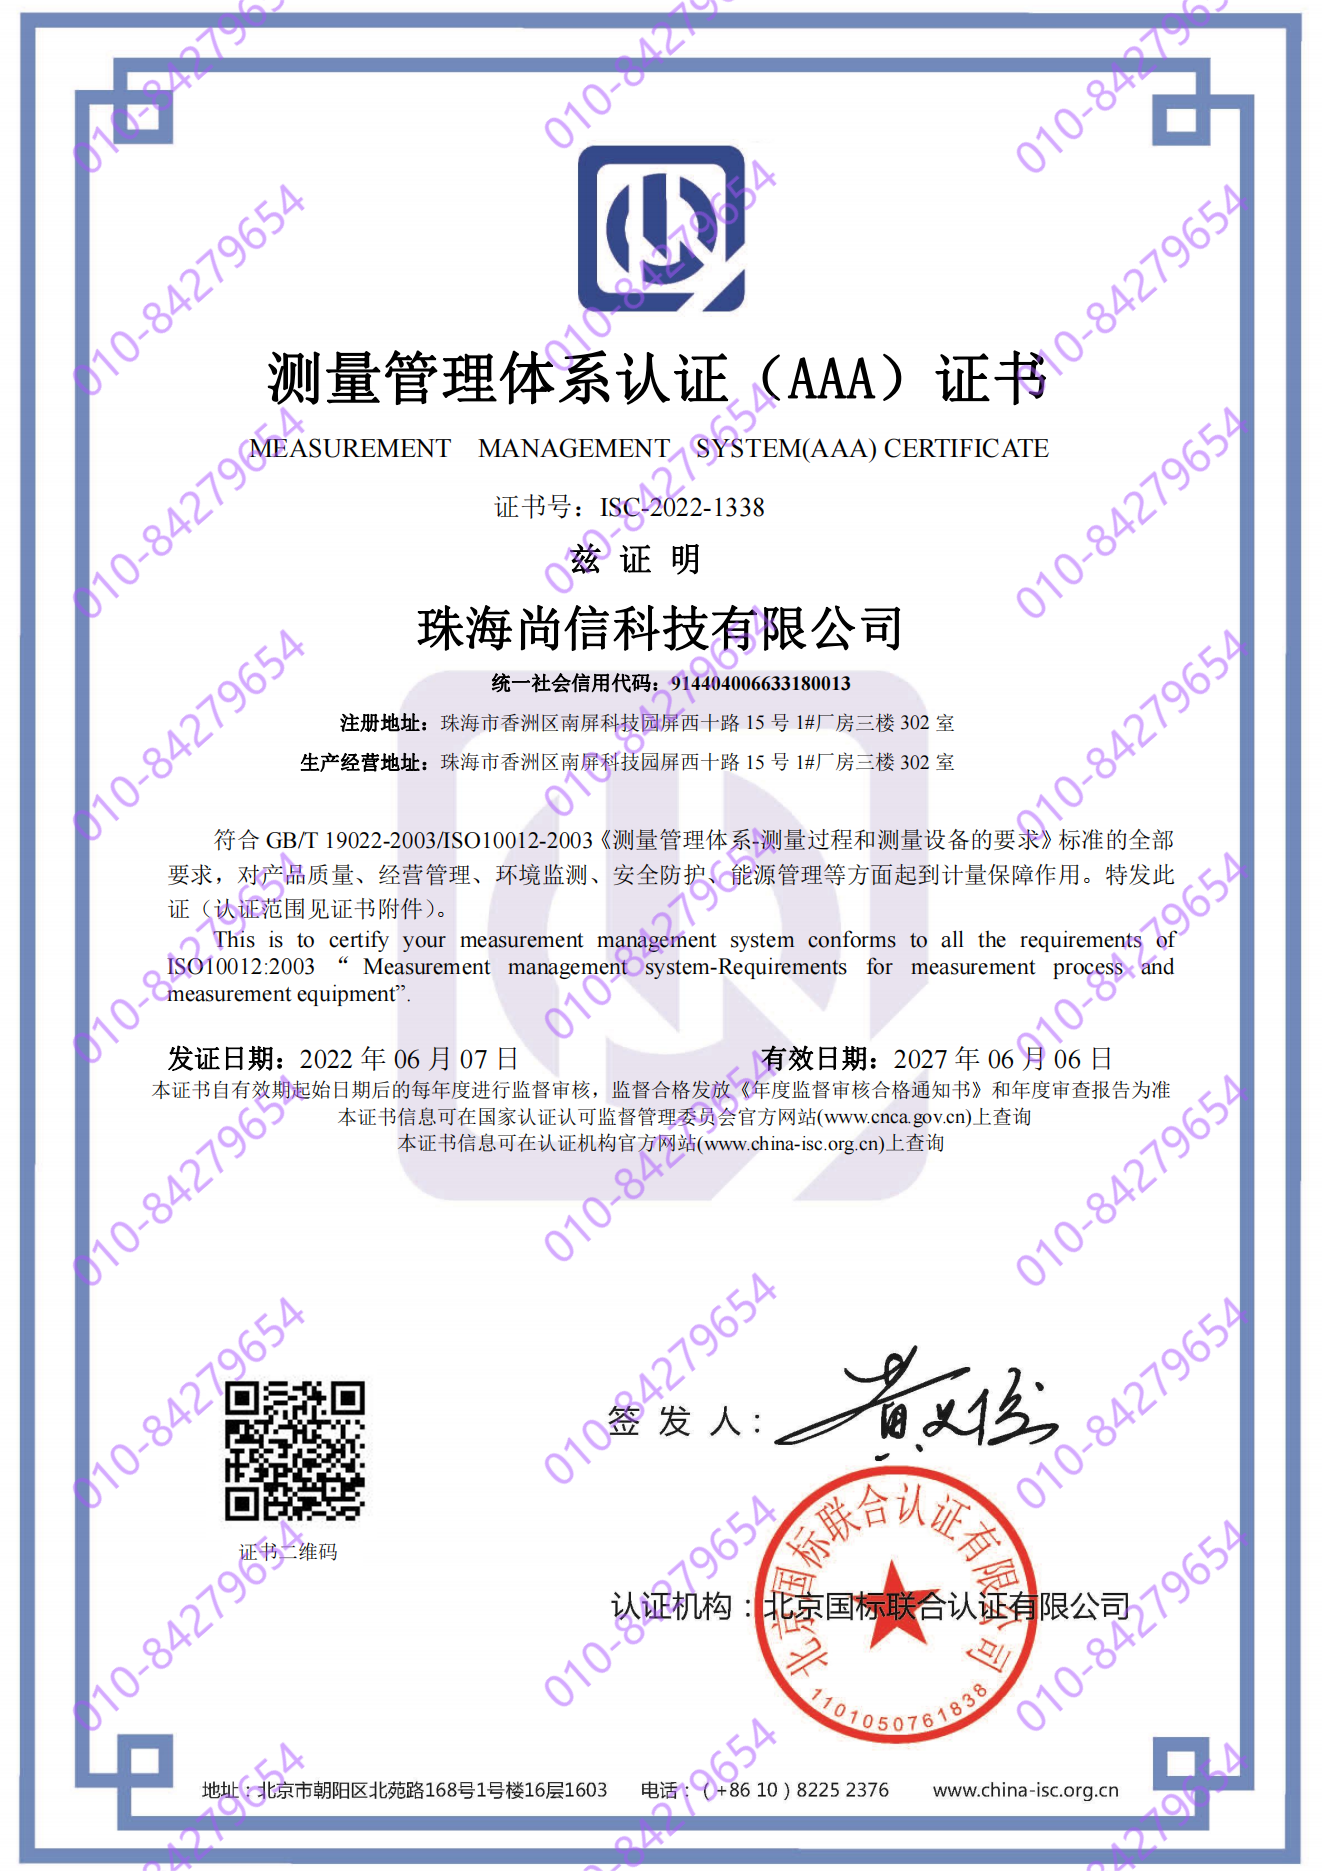 珠海尚信科技有限公司  喜获“测量管理体系认证（AAA）证书”